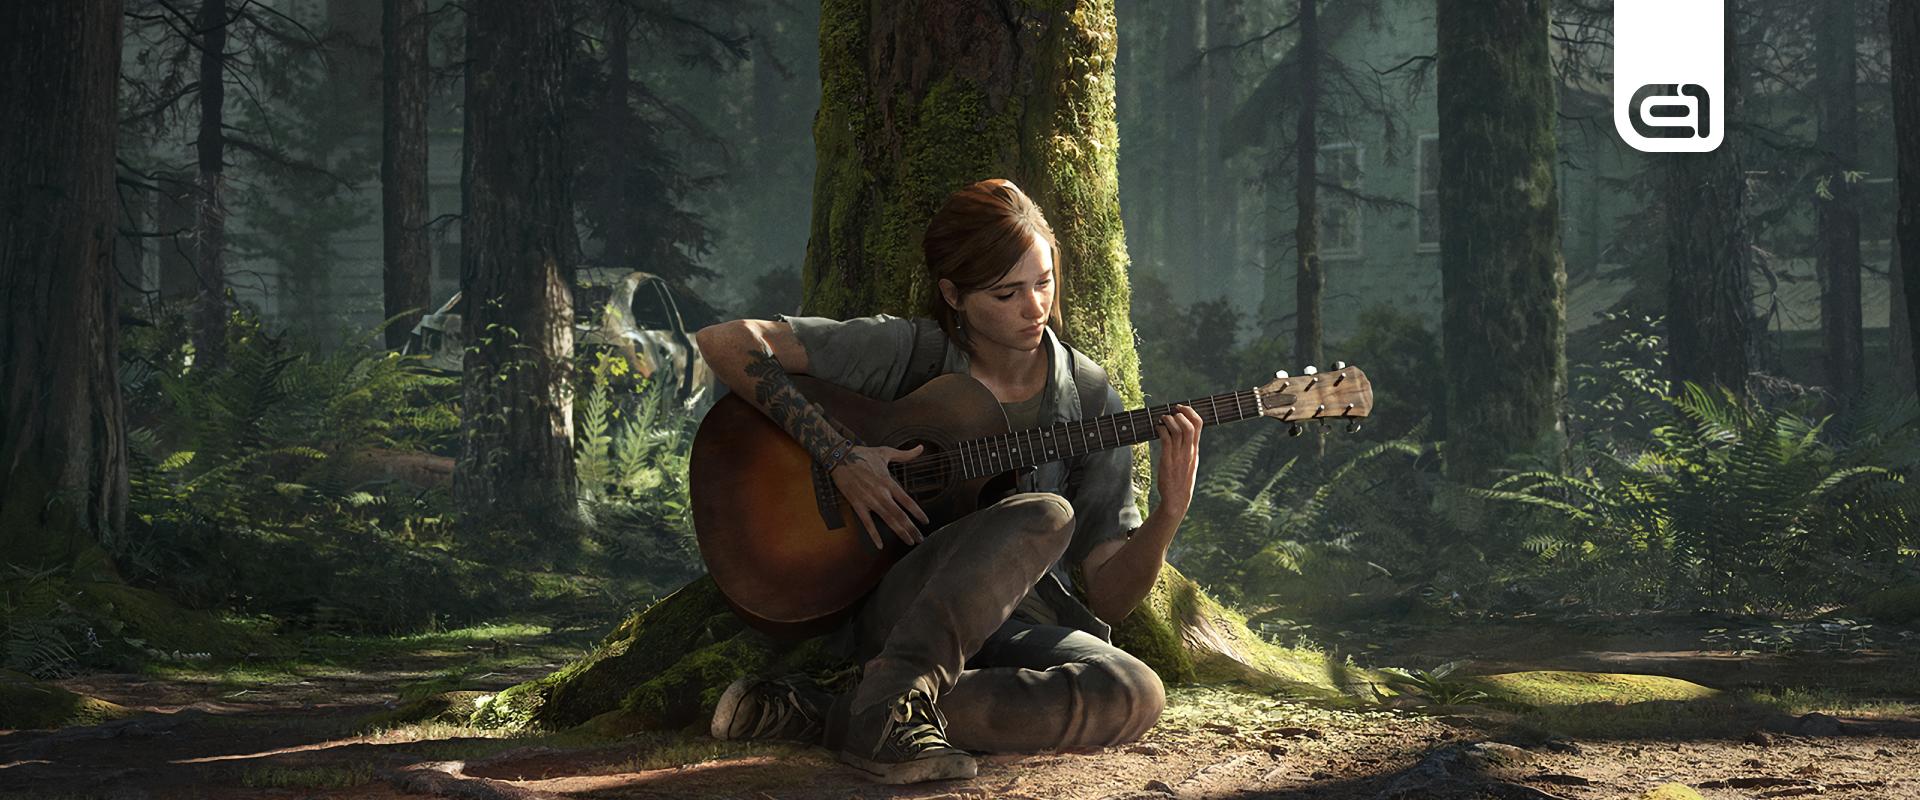 Úgy tűnik bajban van a multiplayer The Last of Us-játék